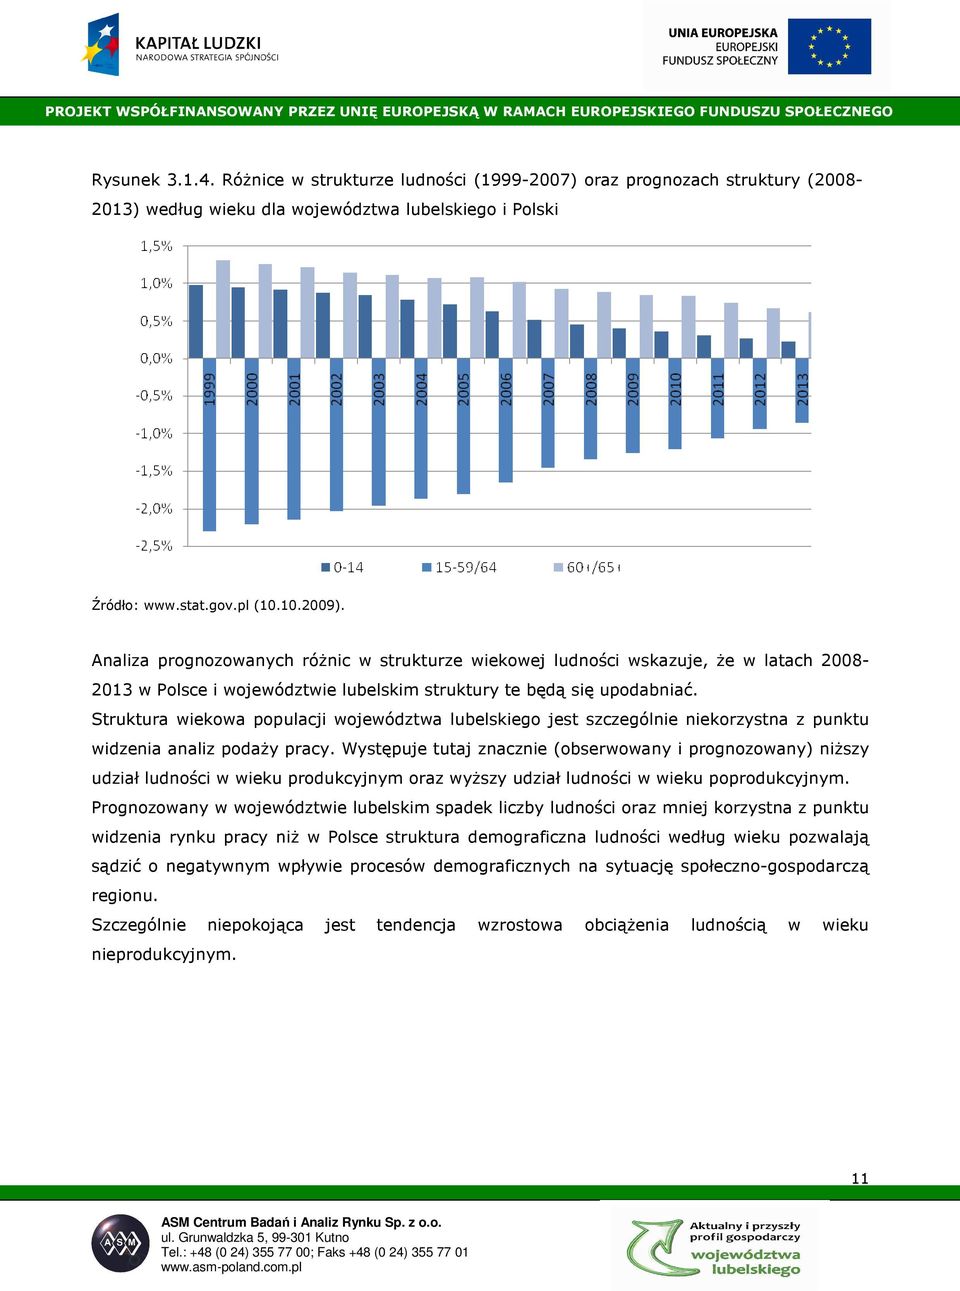 Struktura wiekowa populacji województwa lubelskiego jest szczególnie niekorzystna z punktu widzenia analiz podaŝy pracy.